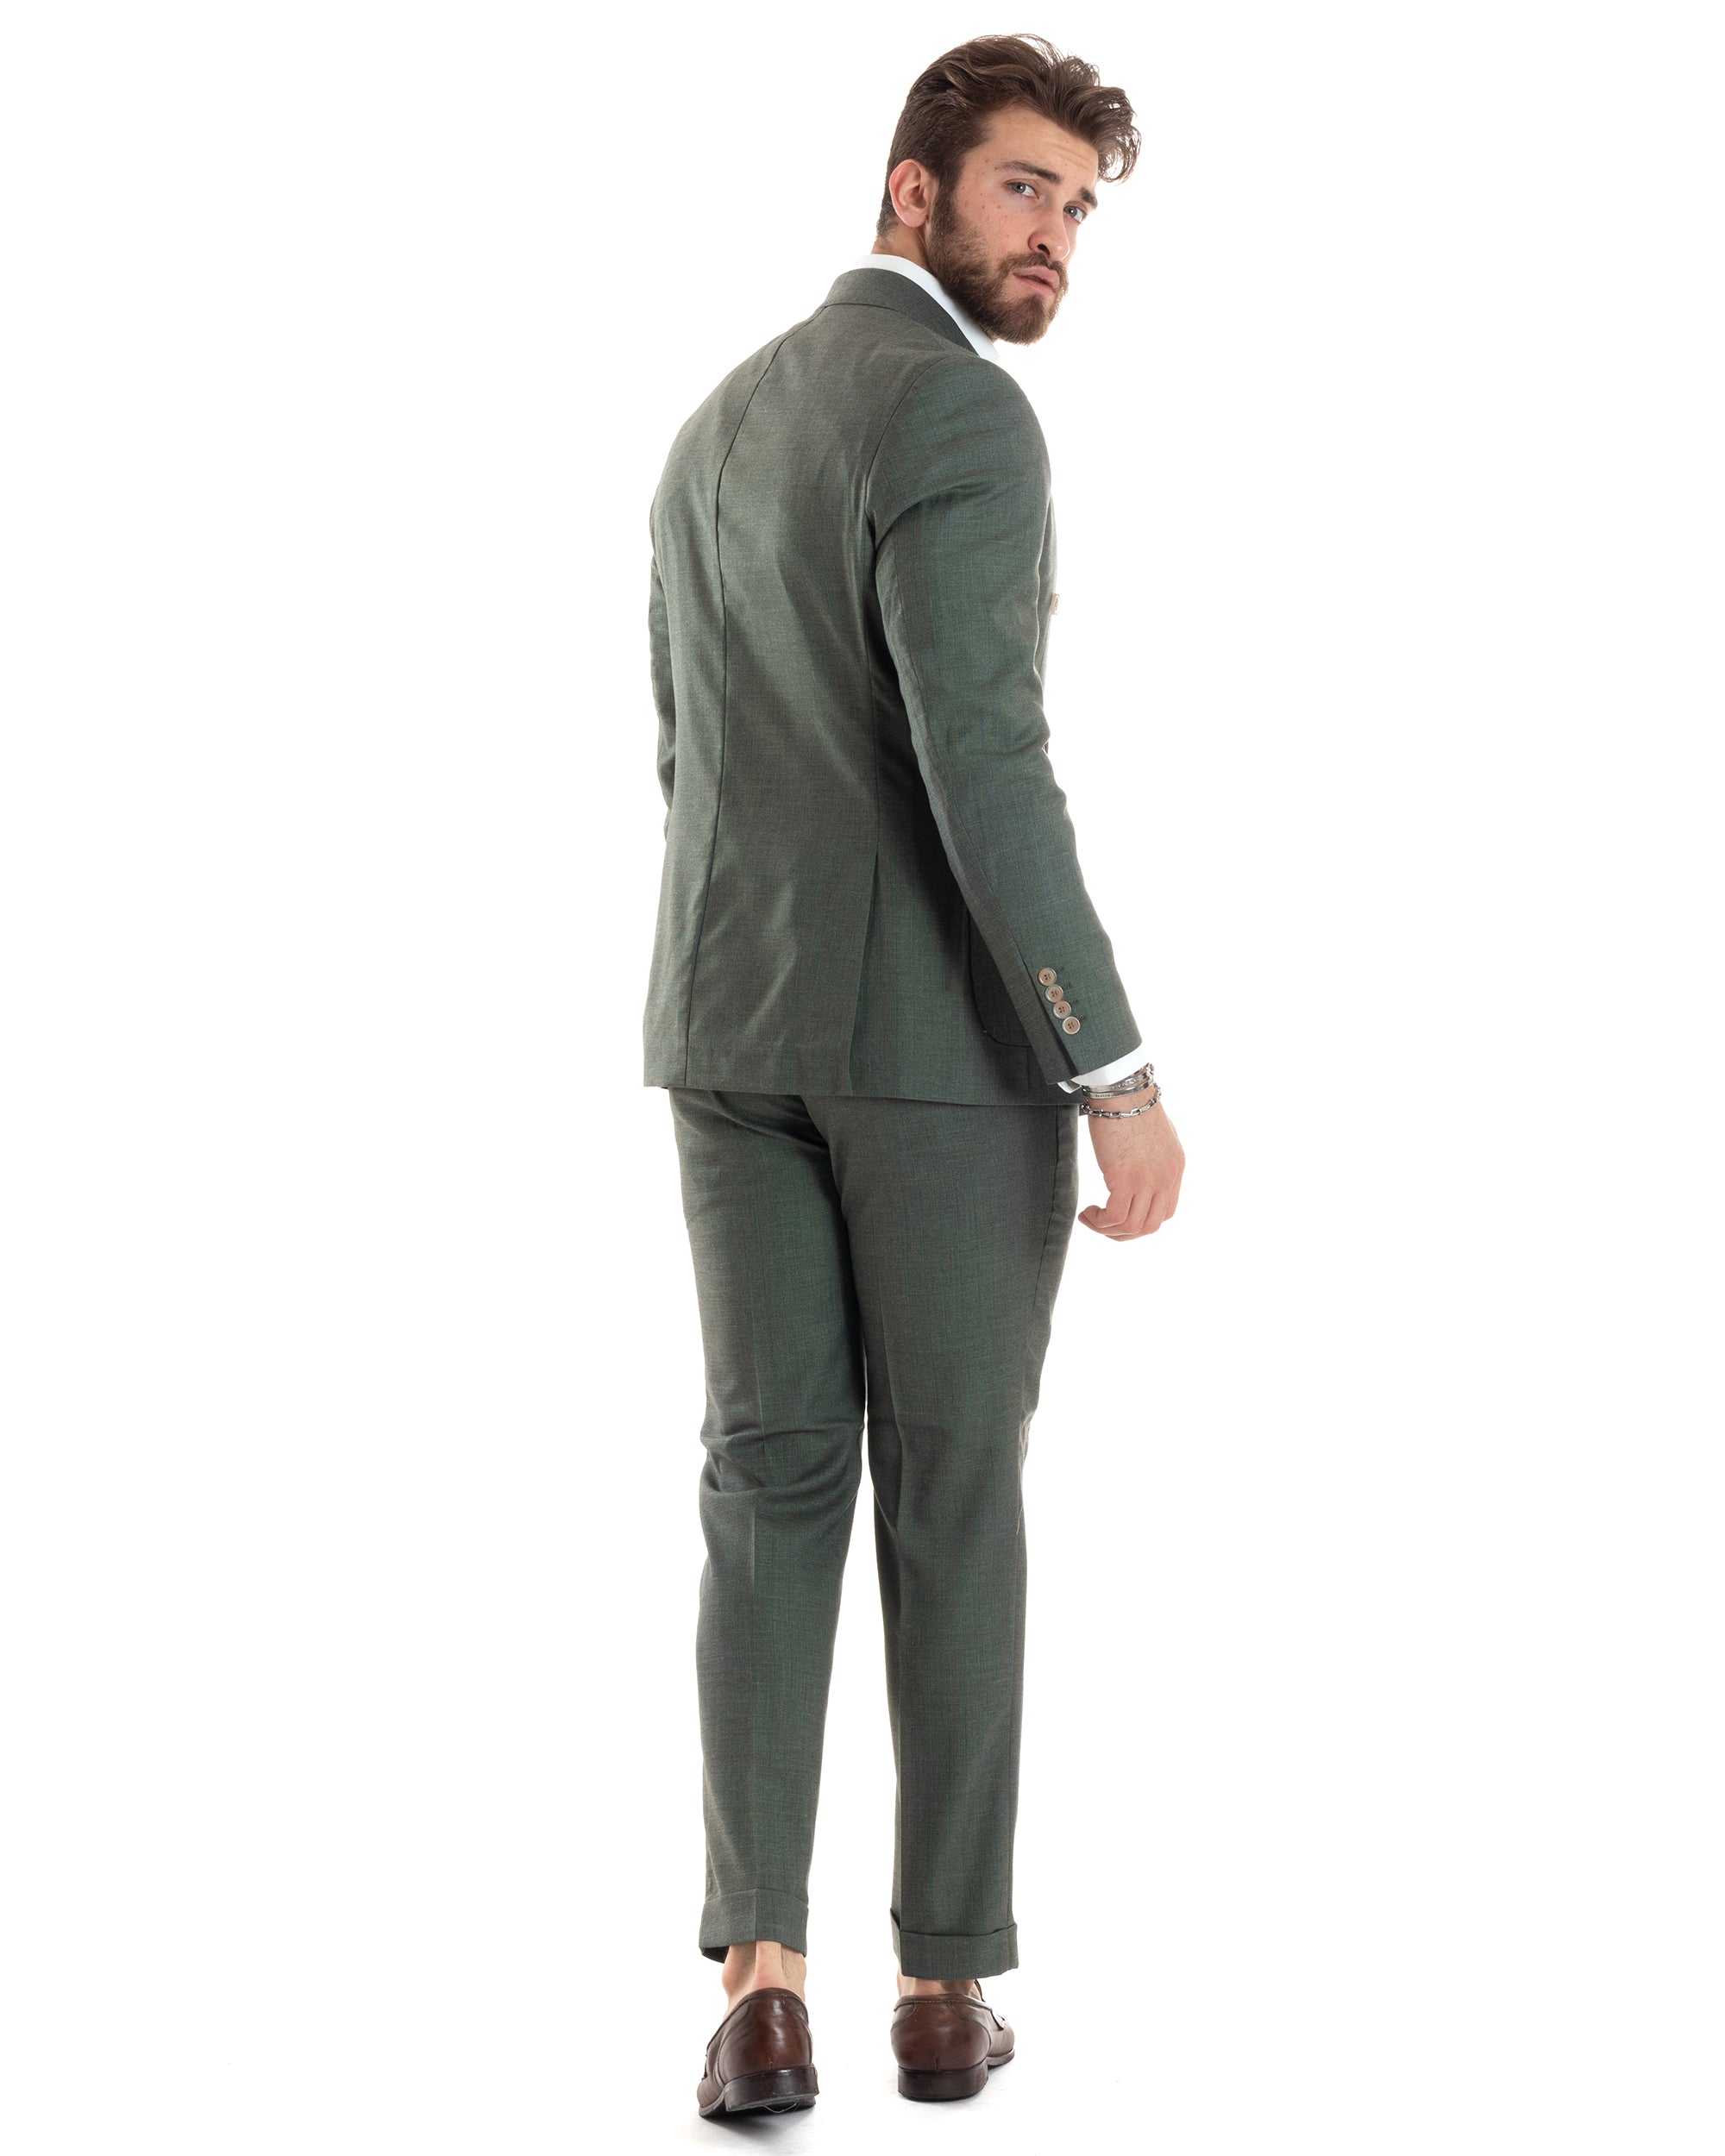 Abito Uomo Doppiopetto Vestito Completo Giacca Pantaloni Verde Gessato Elegante Casual GIOSAL-AE1026A